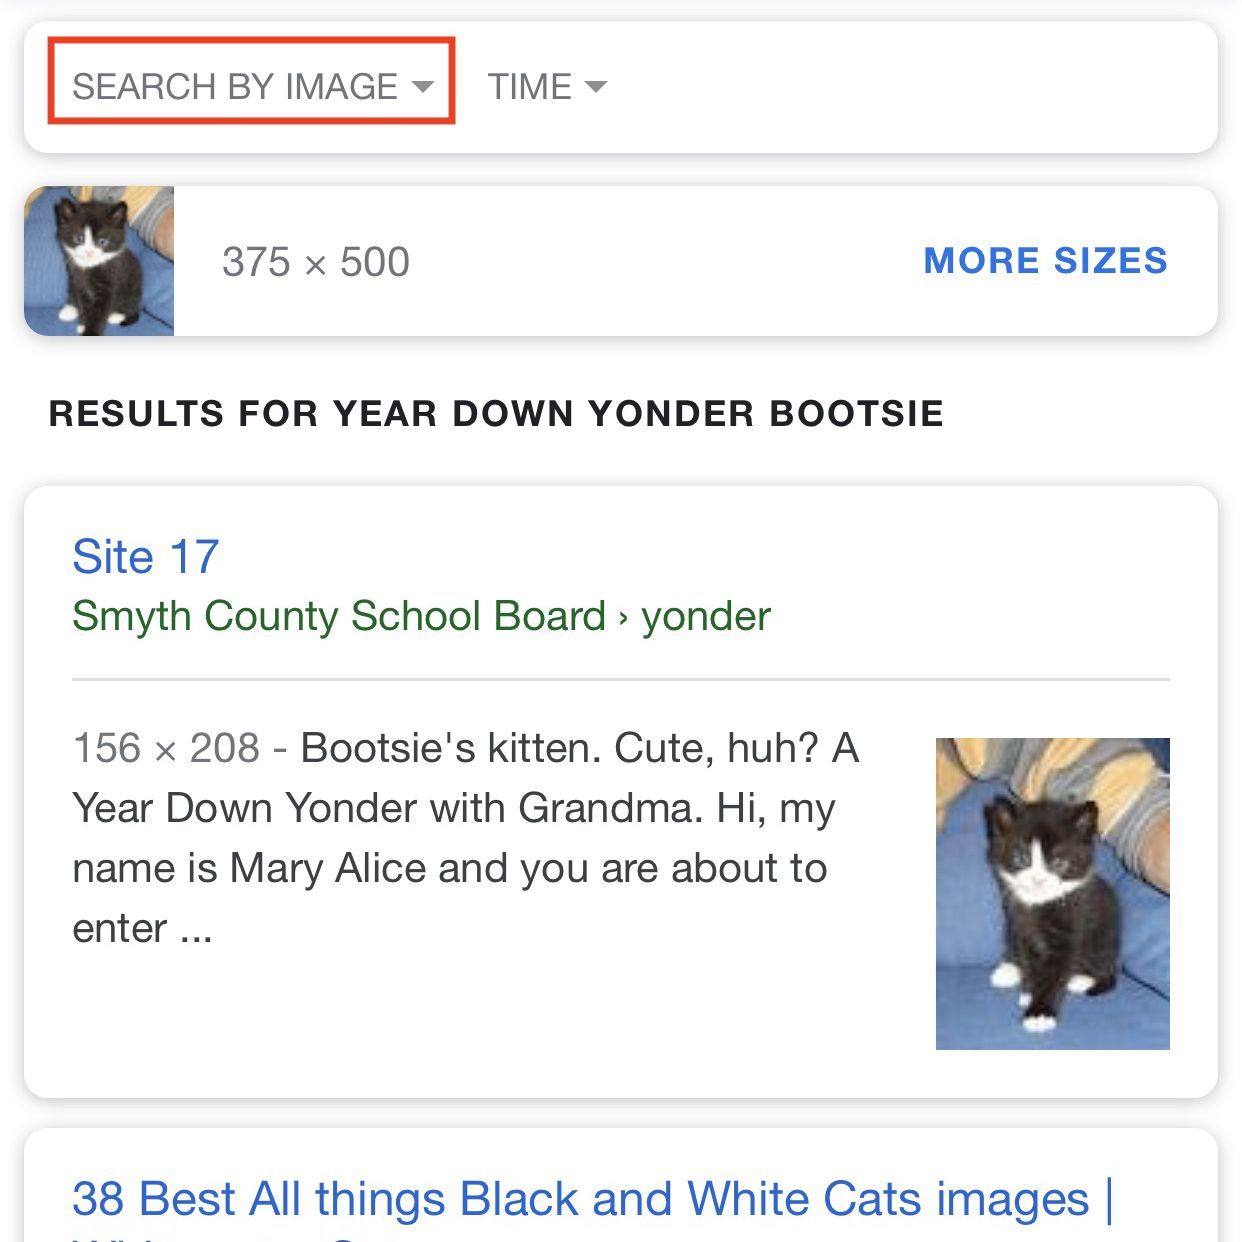 Снимок экрана с результатами Google Картинки с выделенной опцией Поиск по изображению.